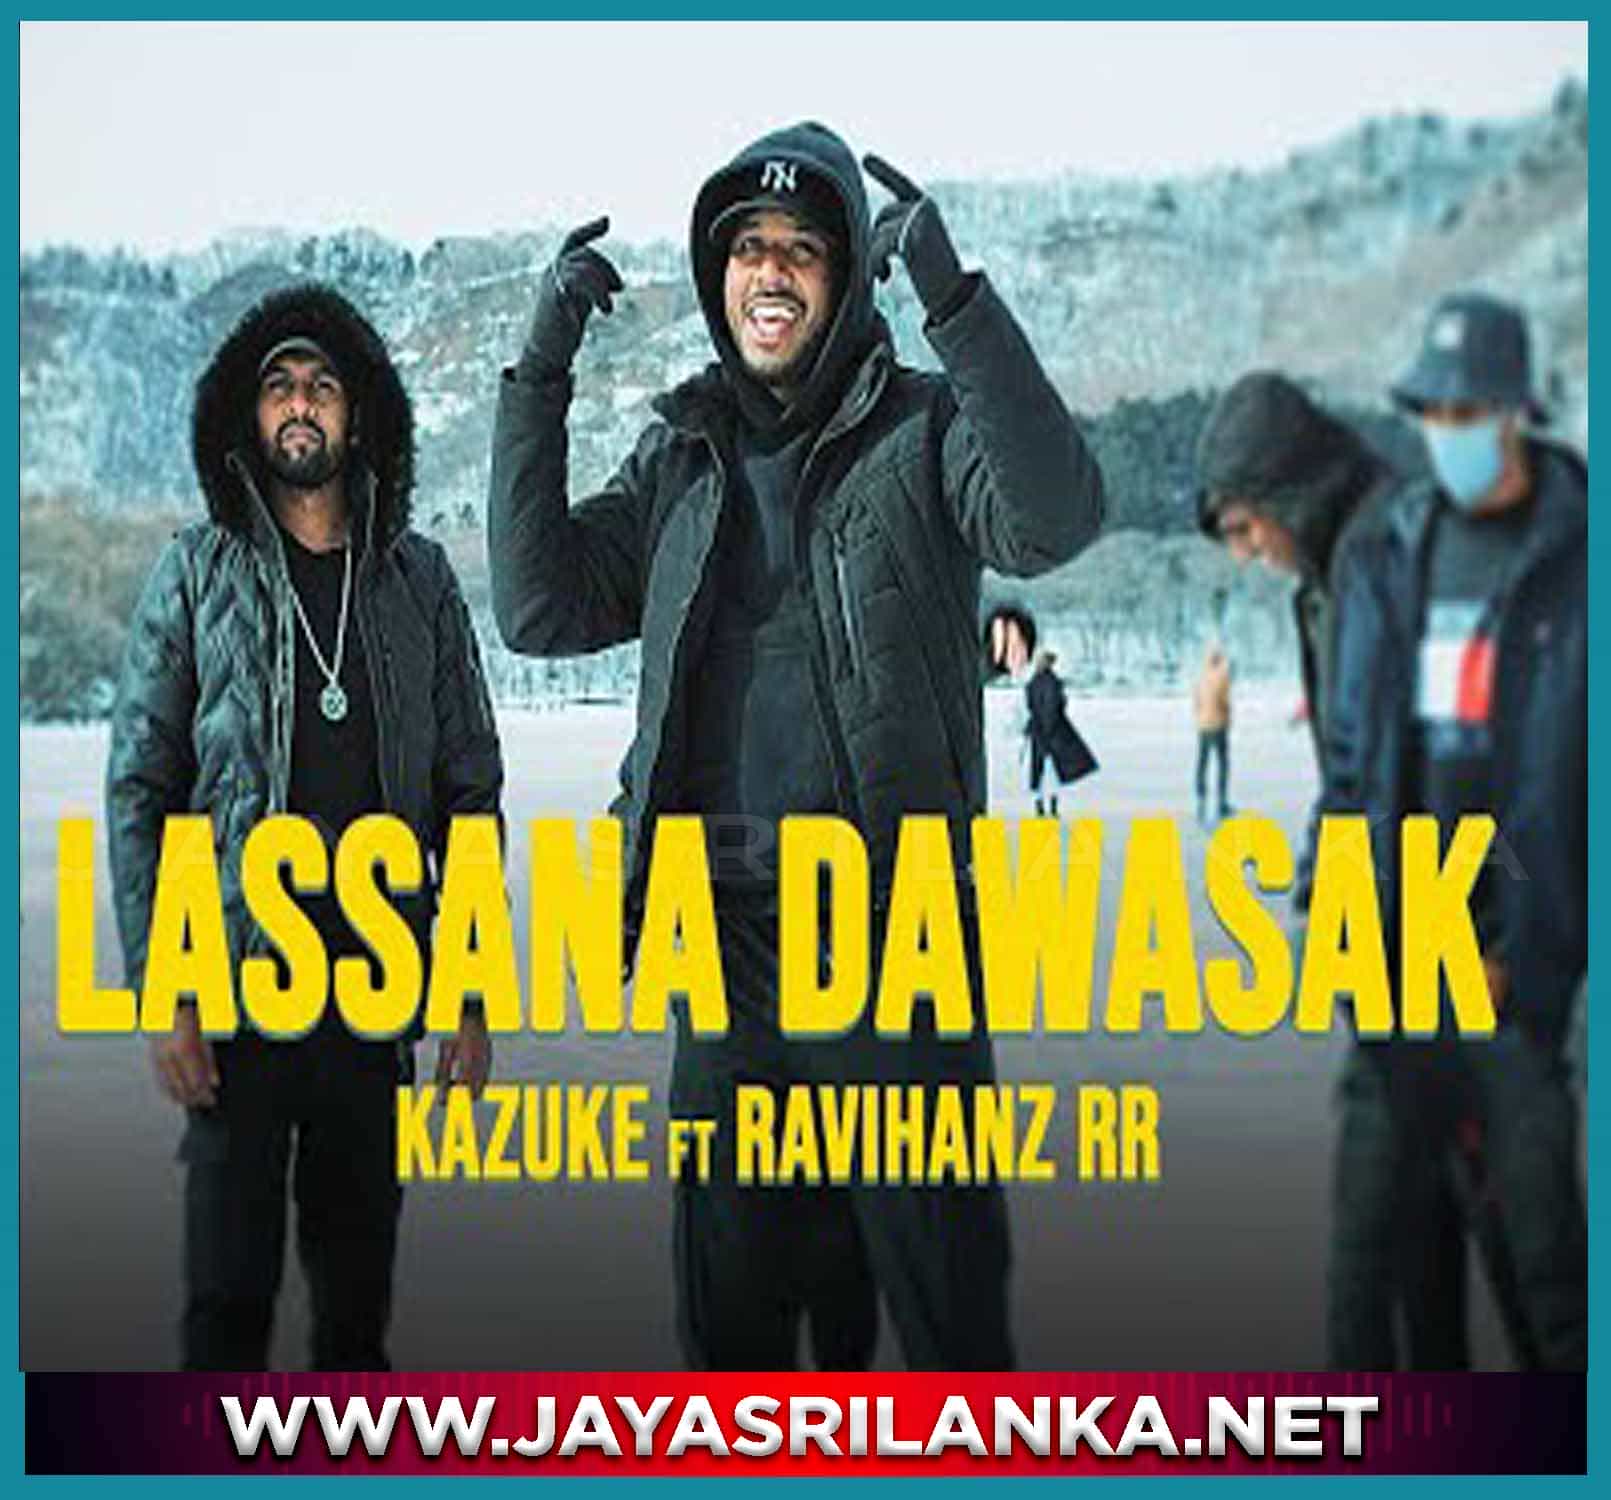 jayasrilanka ~ Lassana Dawasak - Kazuke ft Ravihanz RR